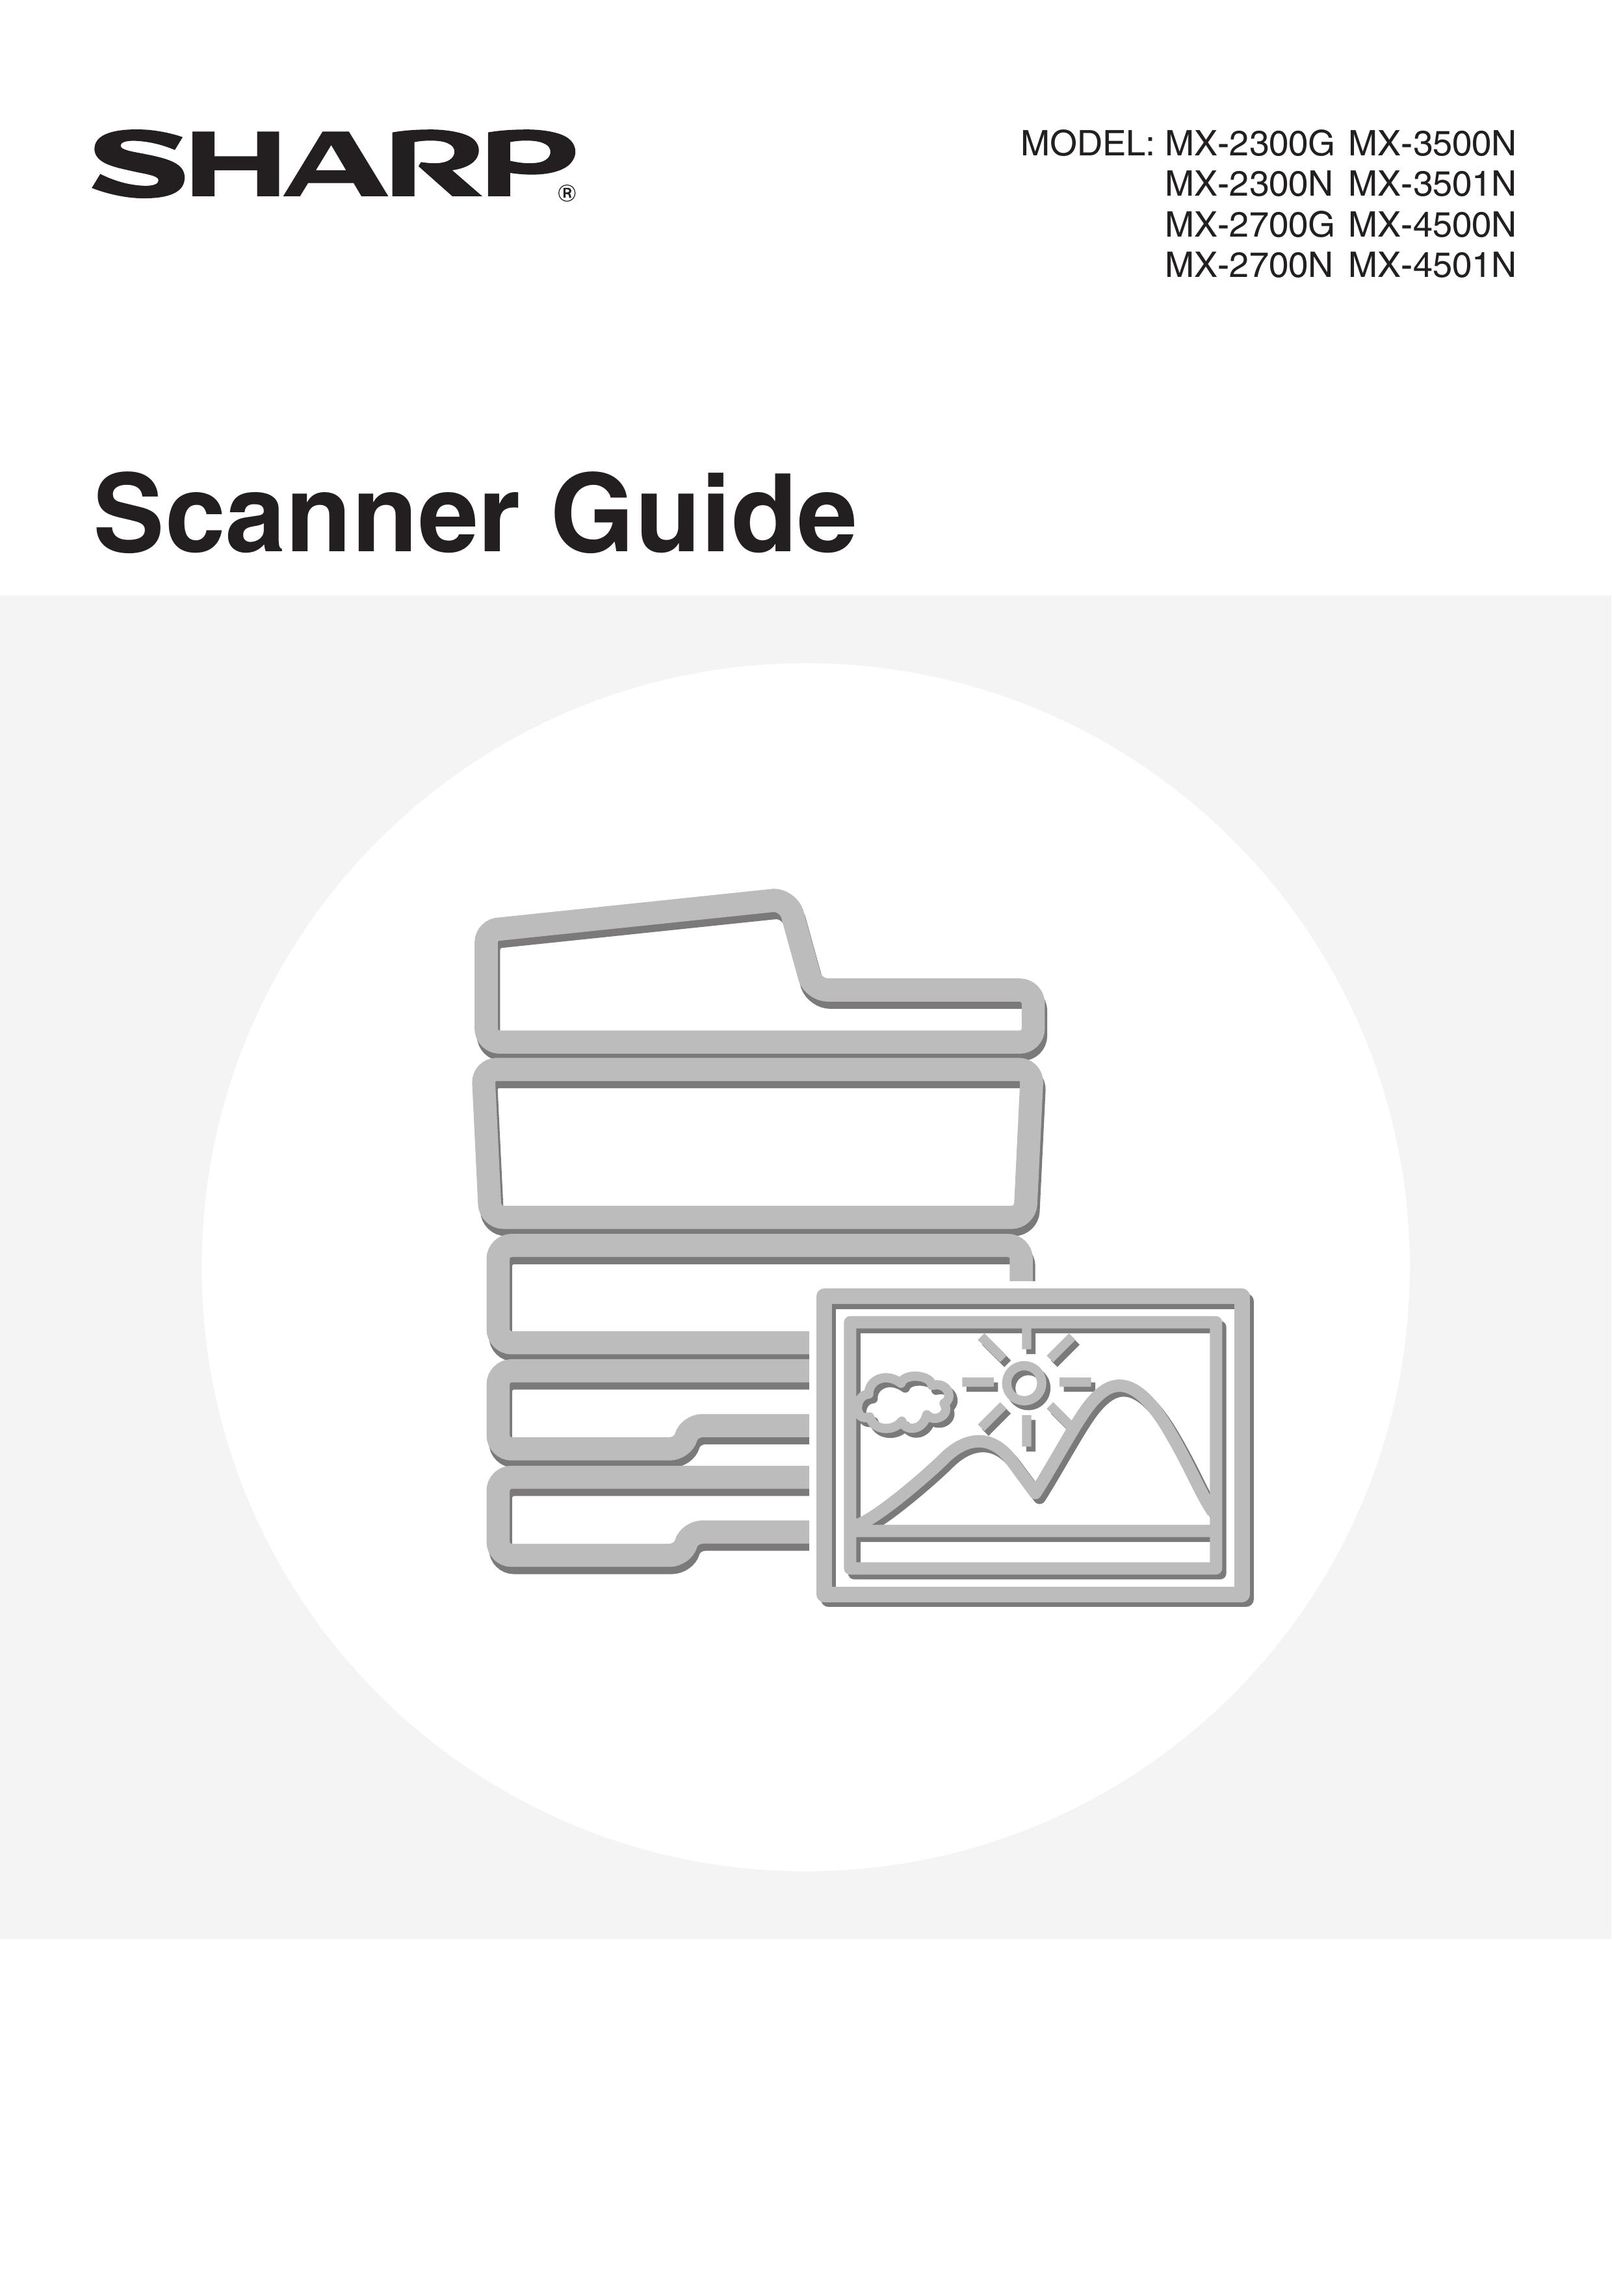 Sharp MX-2700N Scanner User Manual